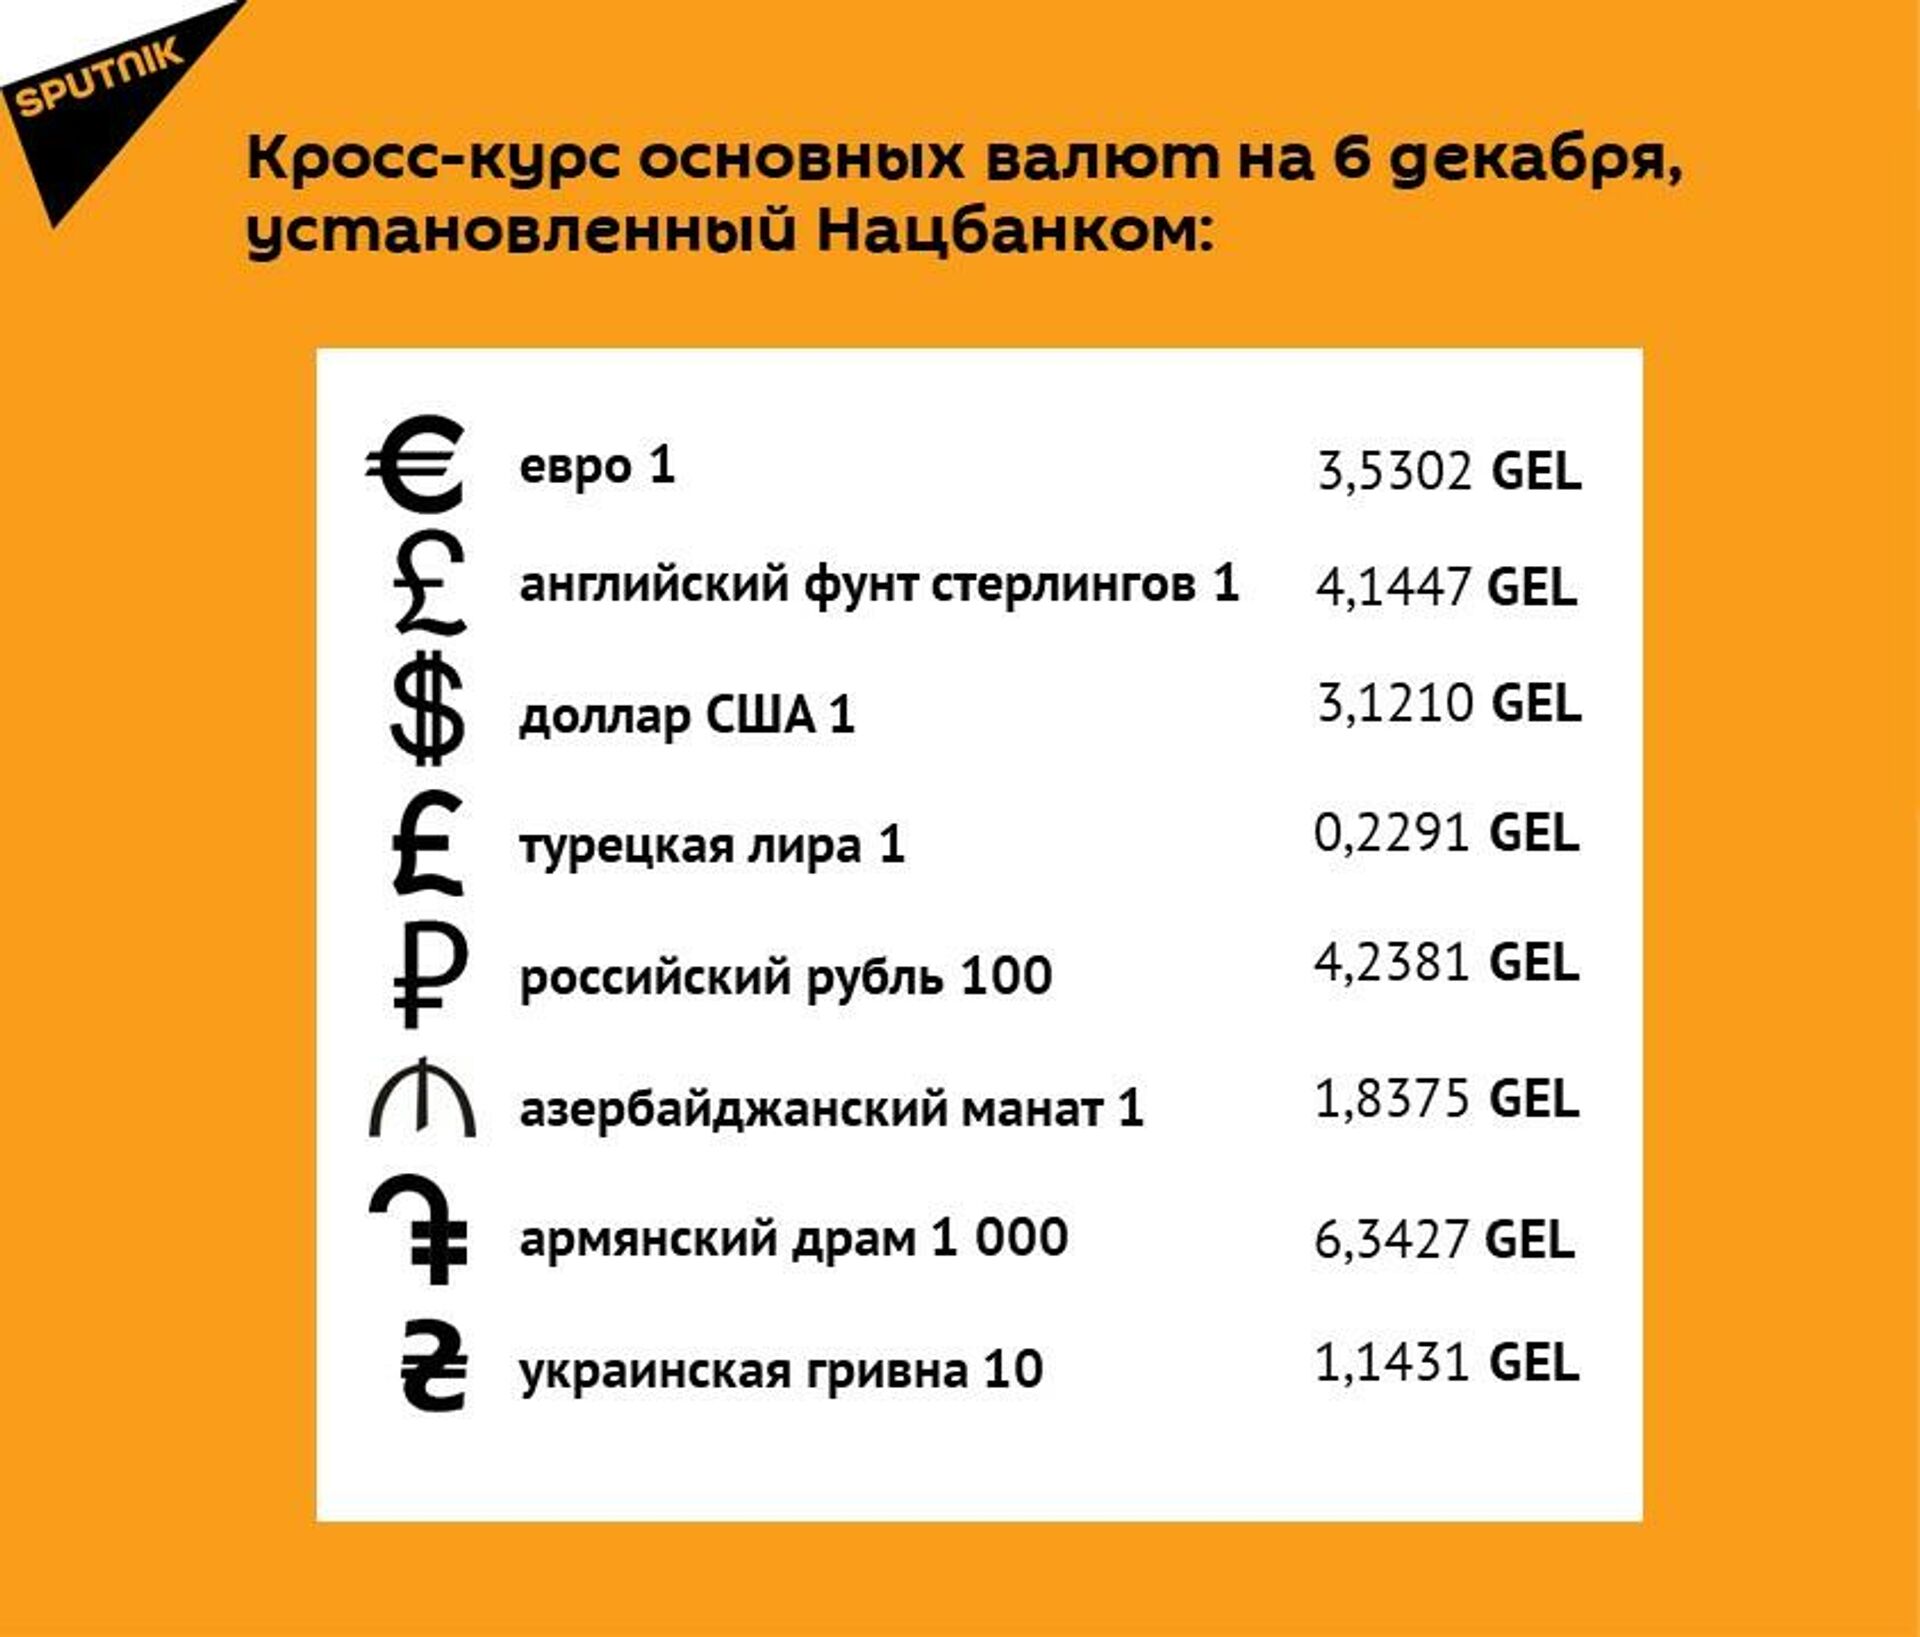 Кросс-курс основных валют на 6 декабря - Sputnik Грузия, 1920, 03.12.2021